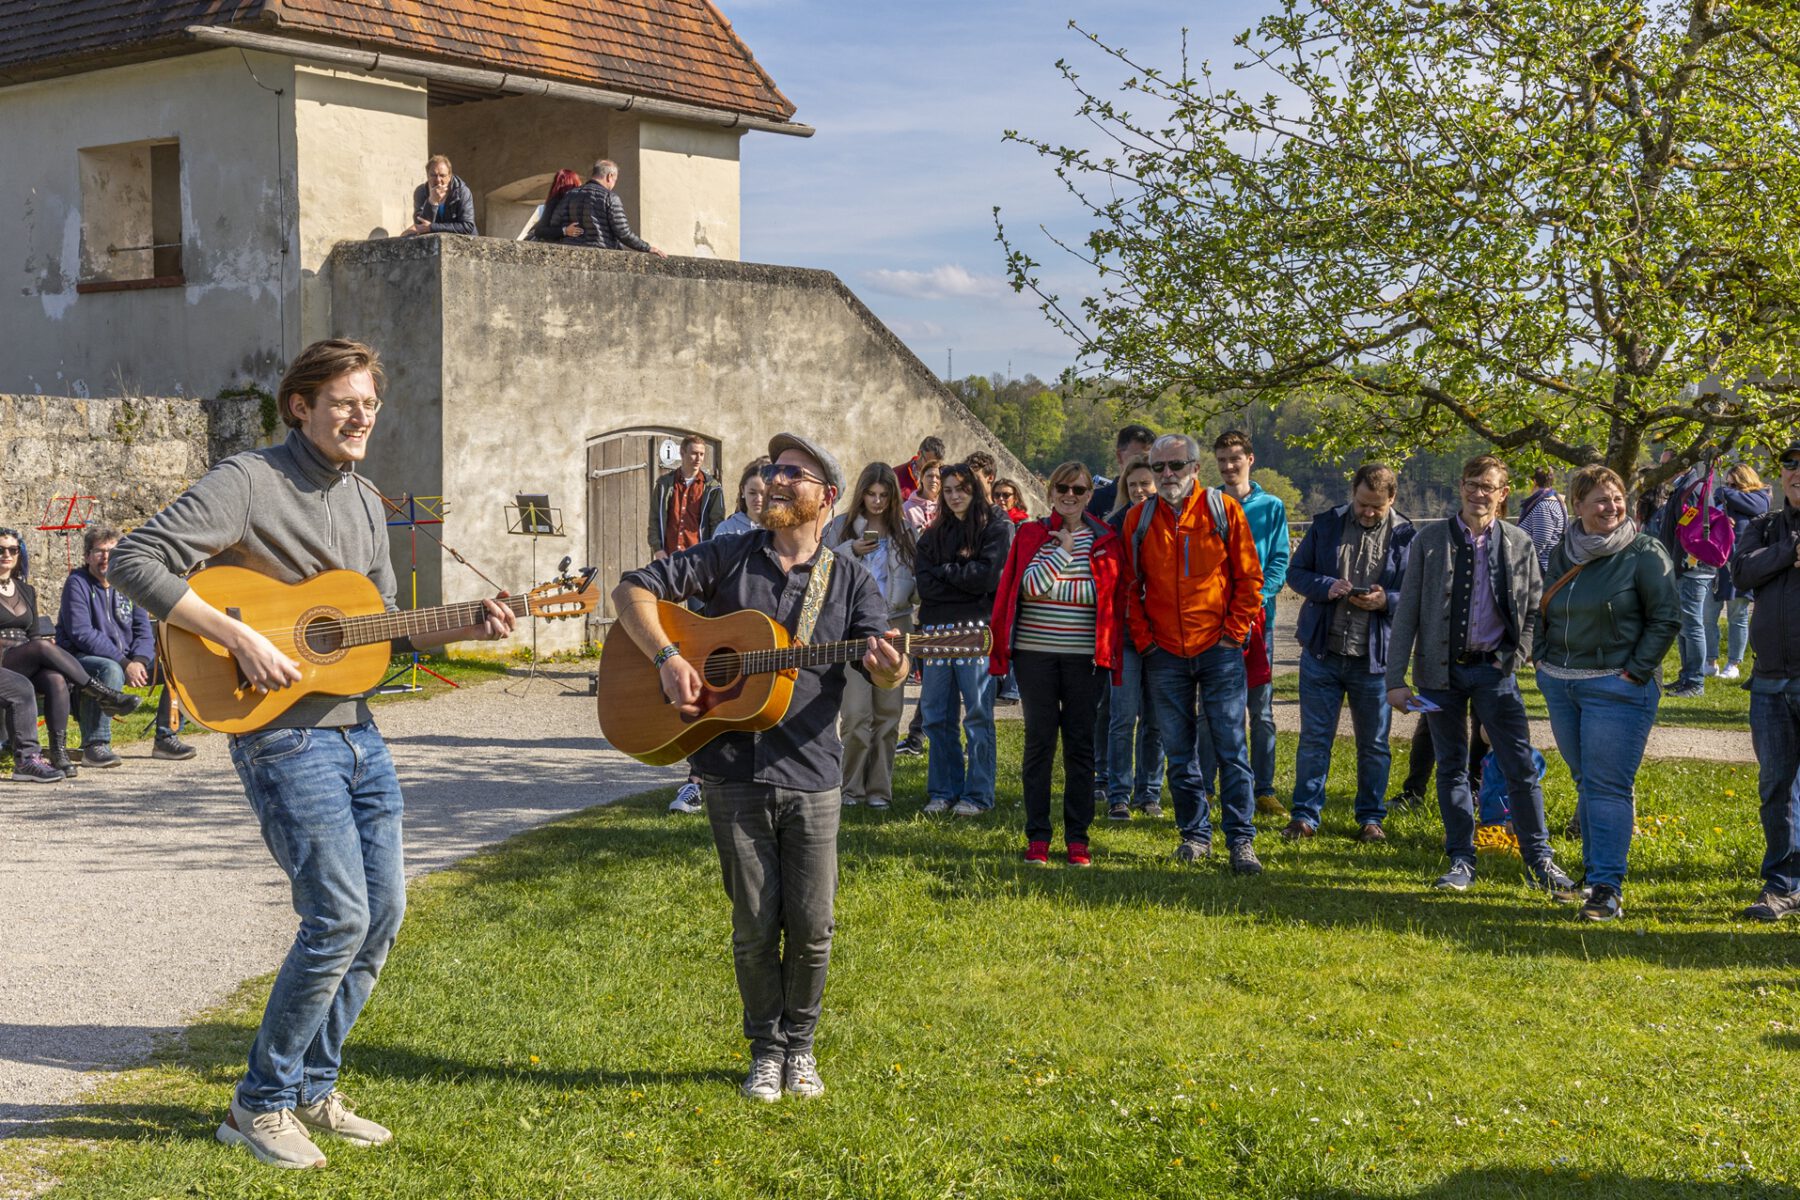 Solokünstler, Duos oder Gruppen – Musik in aller Vielfalt gibt es bei Music for Peace. © Burghauser Touristik GmbH